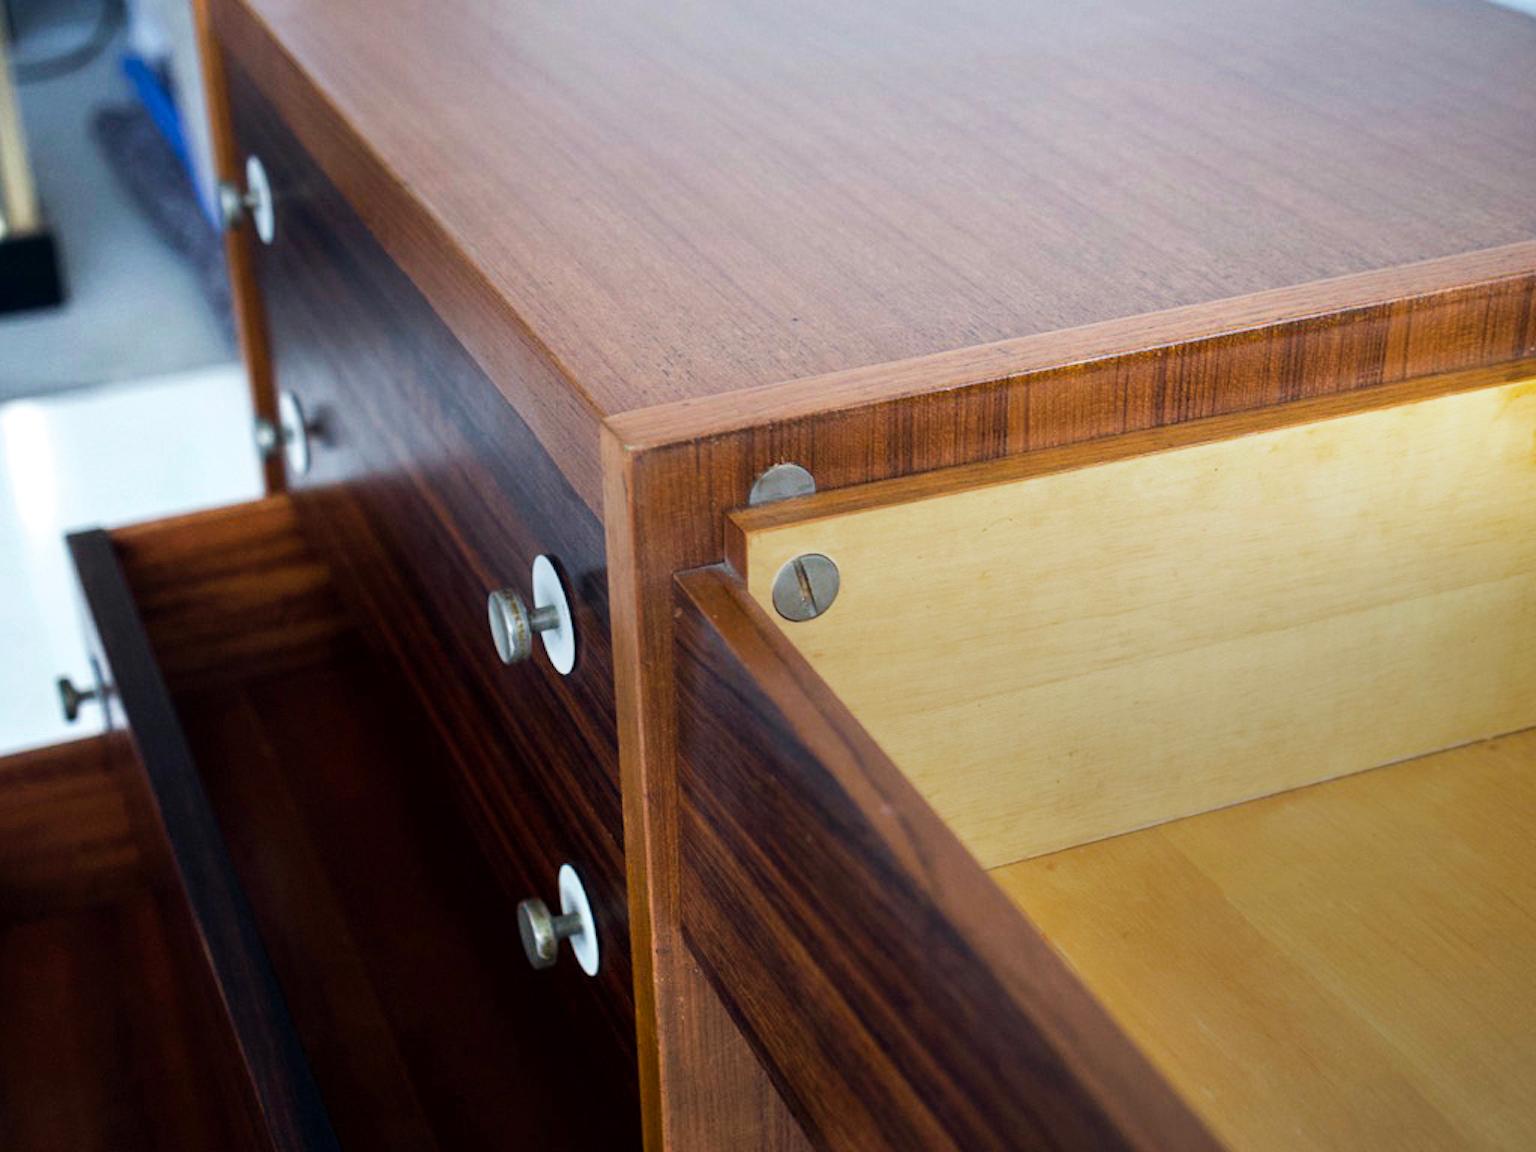 Hardwood Georges Coslin Wooden Desk or Vanity Table